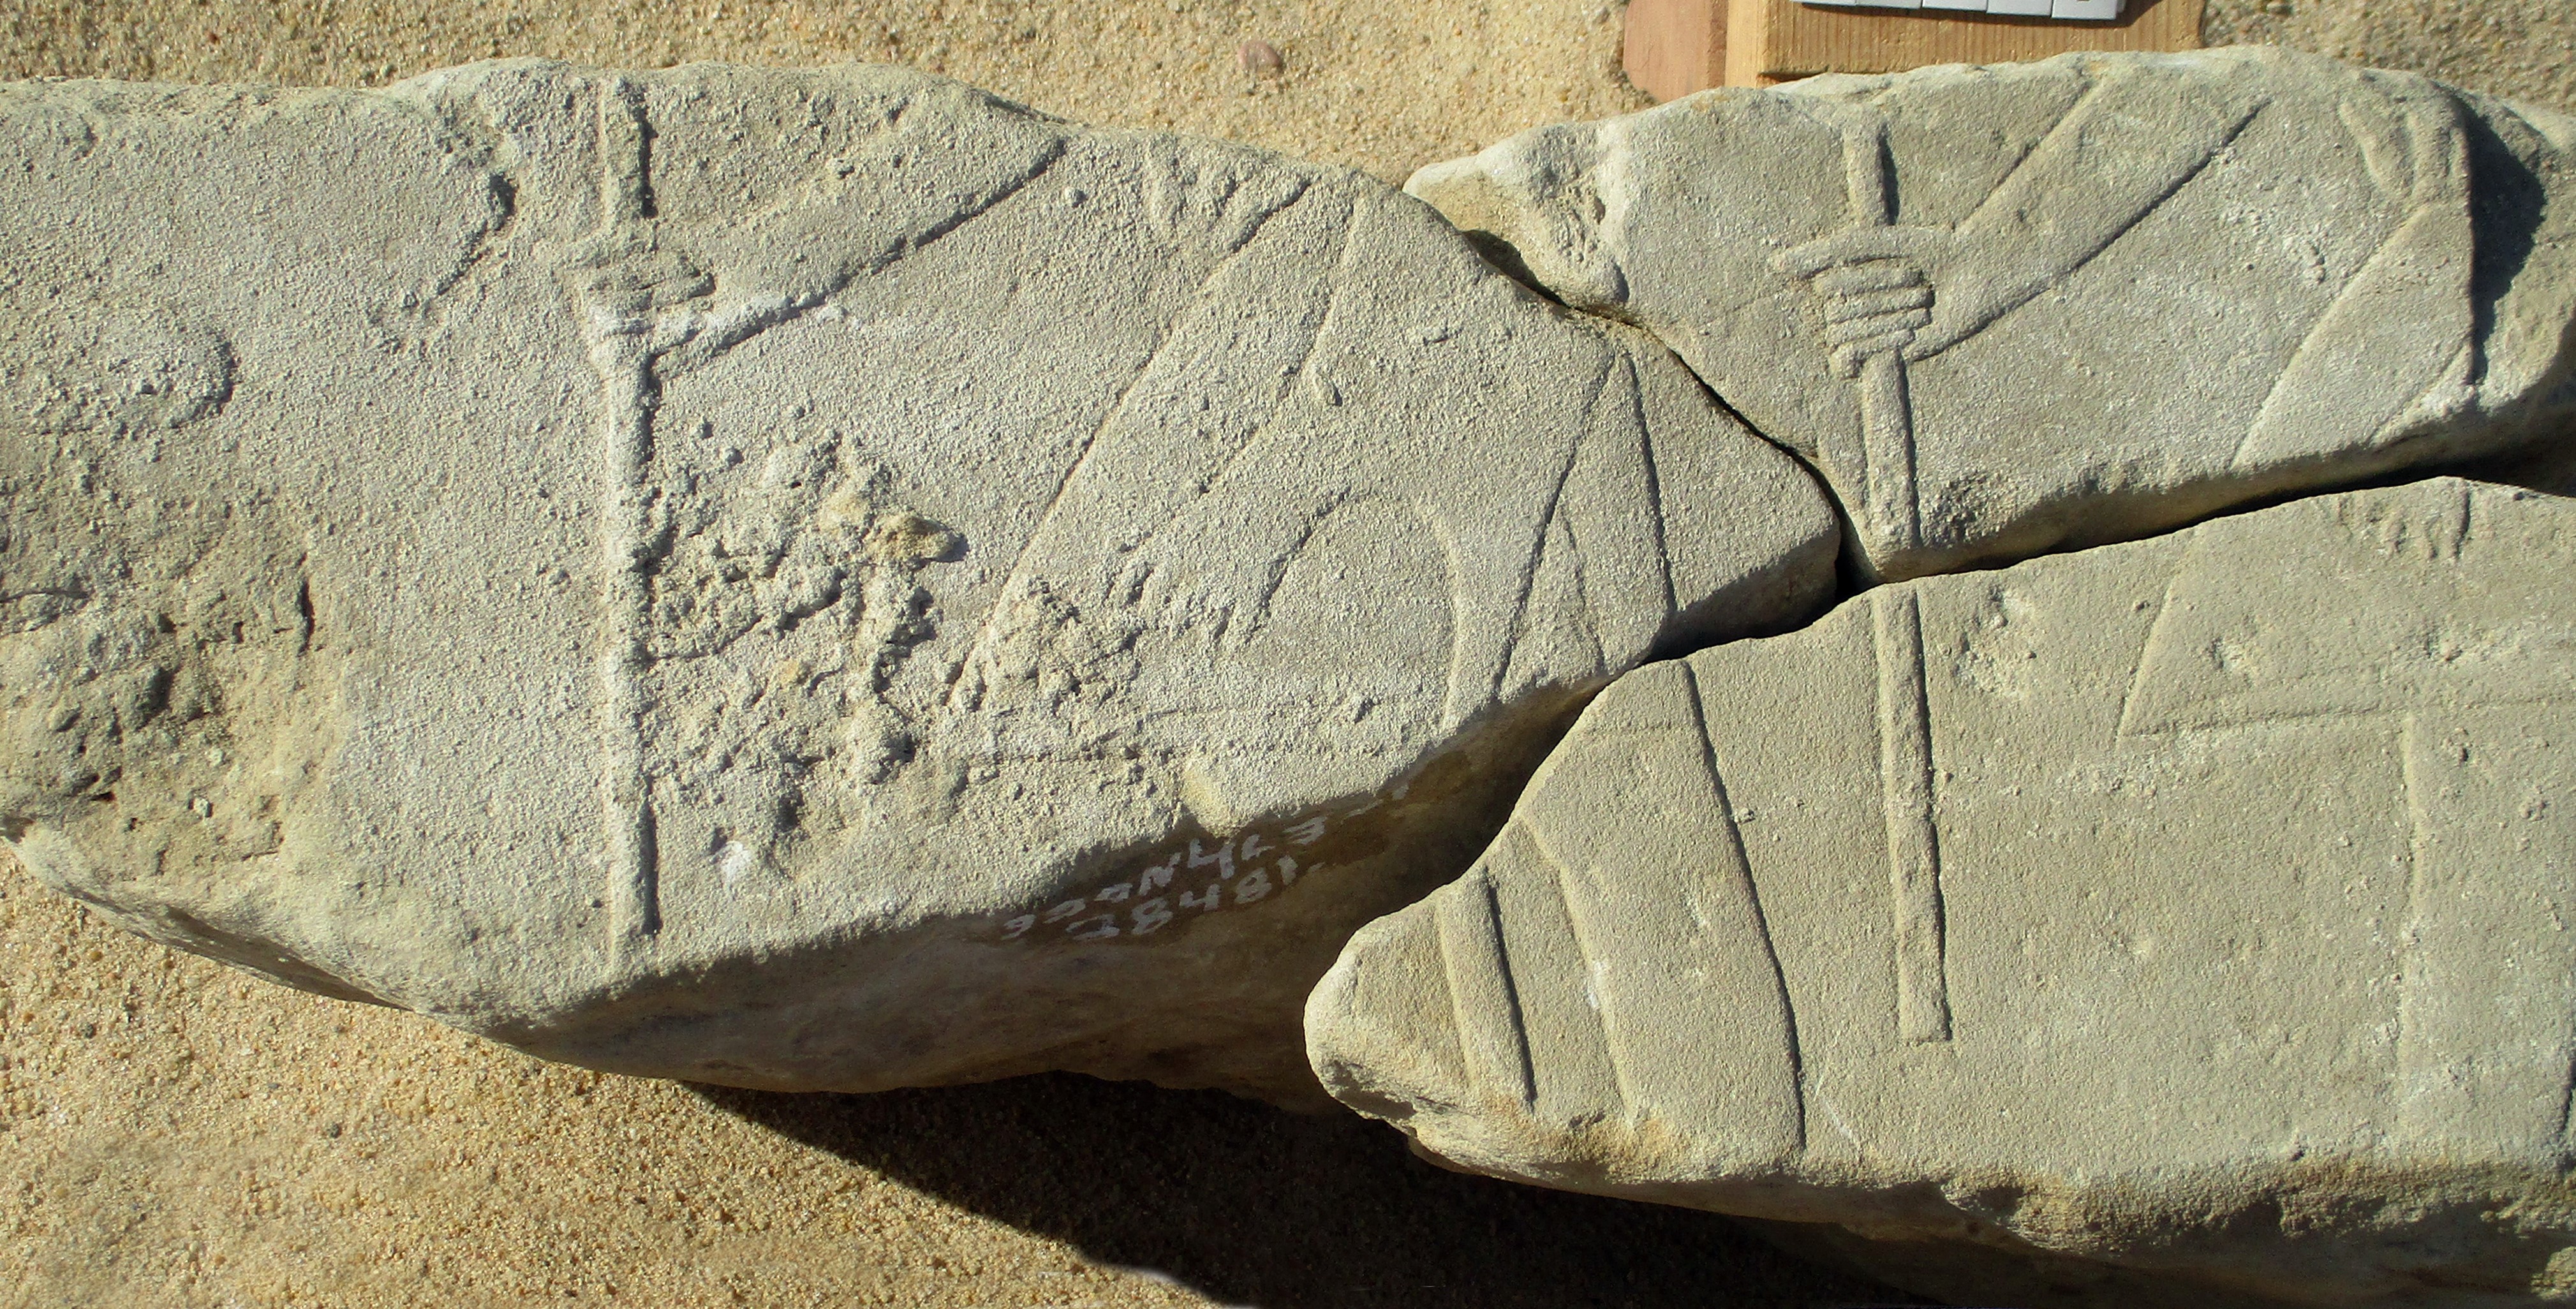 اكتشافات أثرية جديدة بمشروع ترميم معبد الملك أمنحتب الثالث